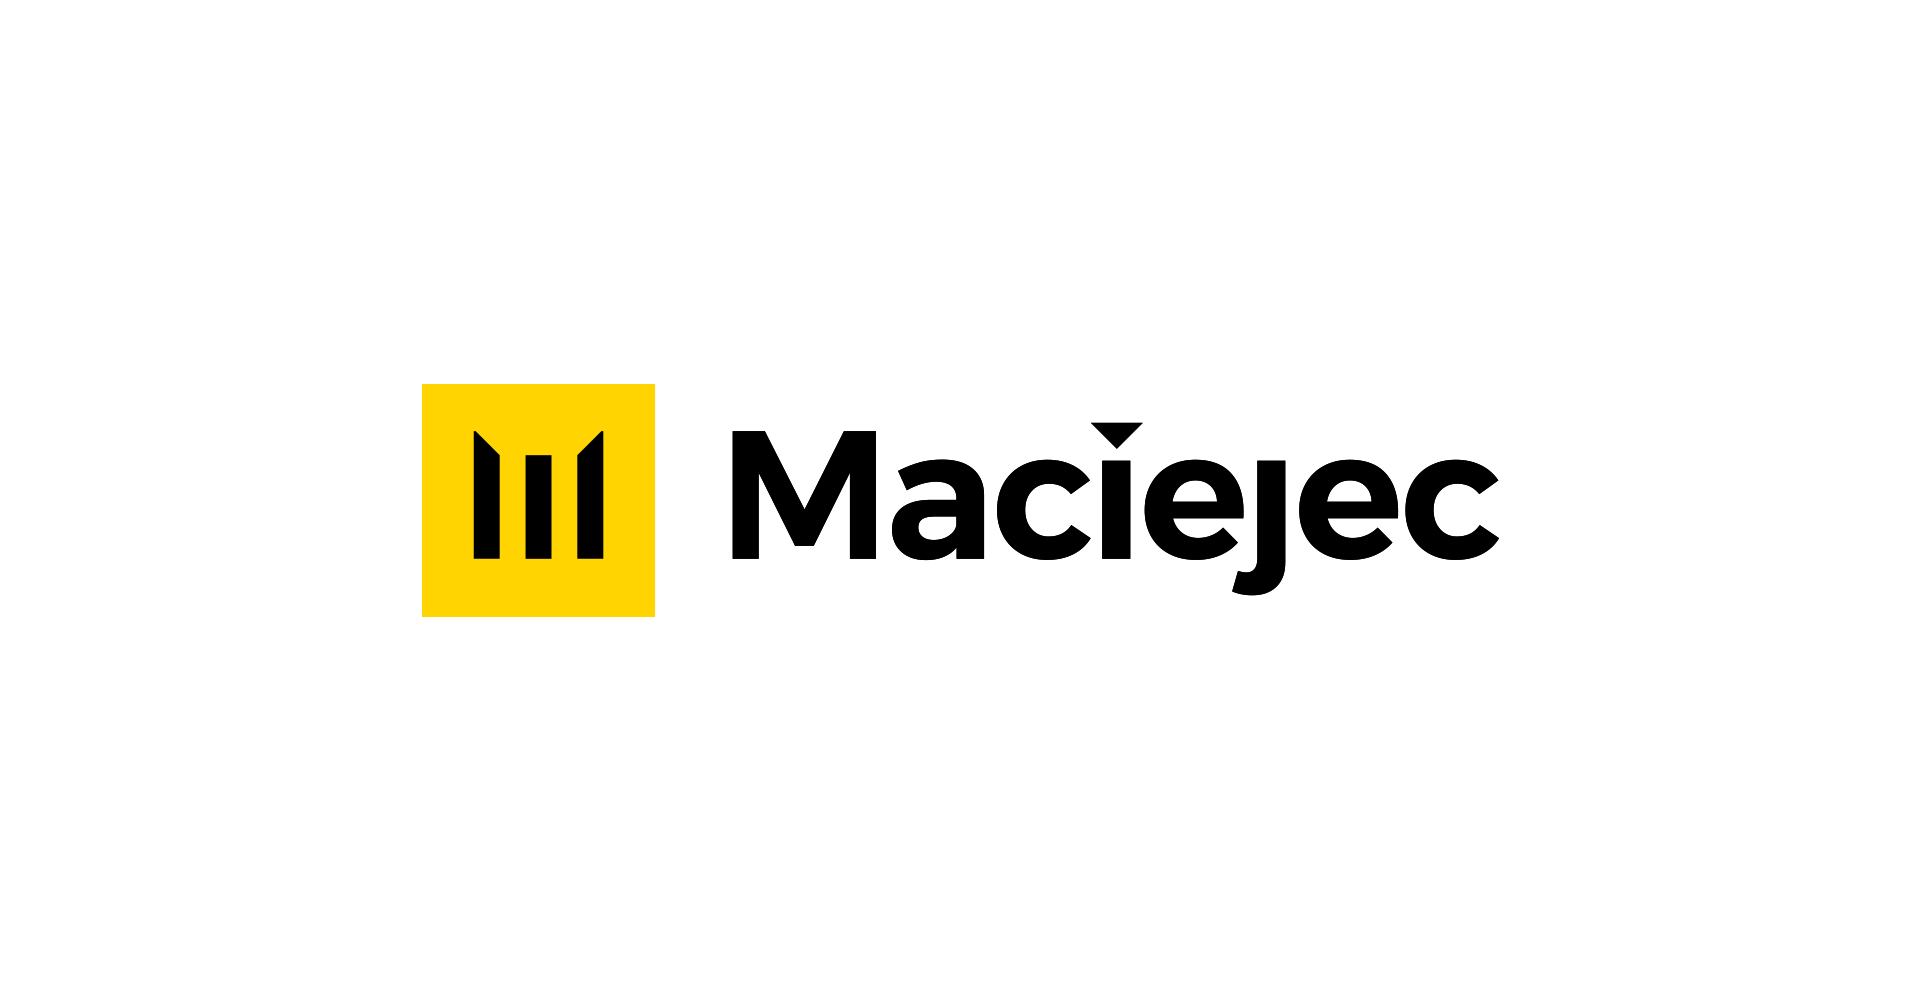 Maciejec - logo construction